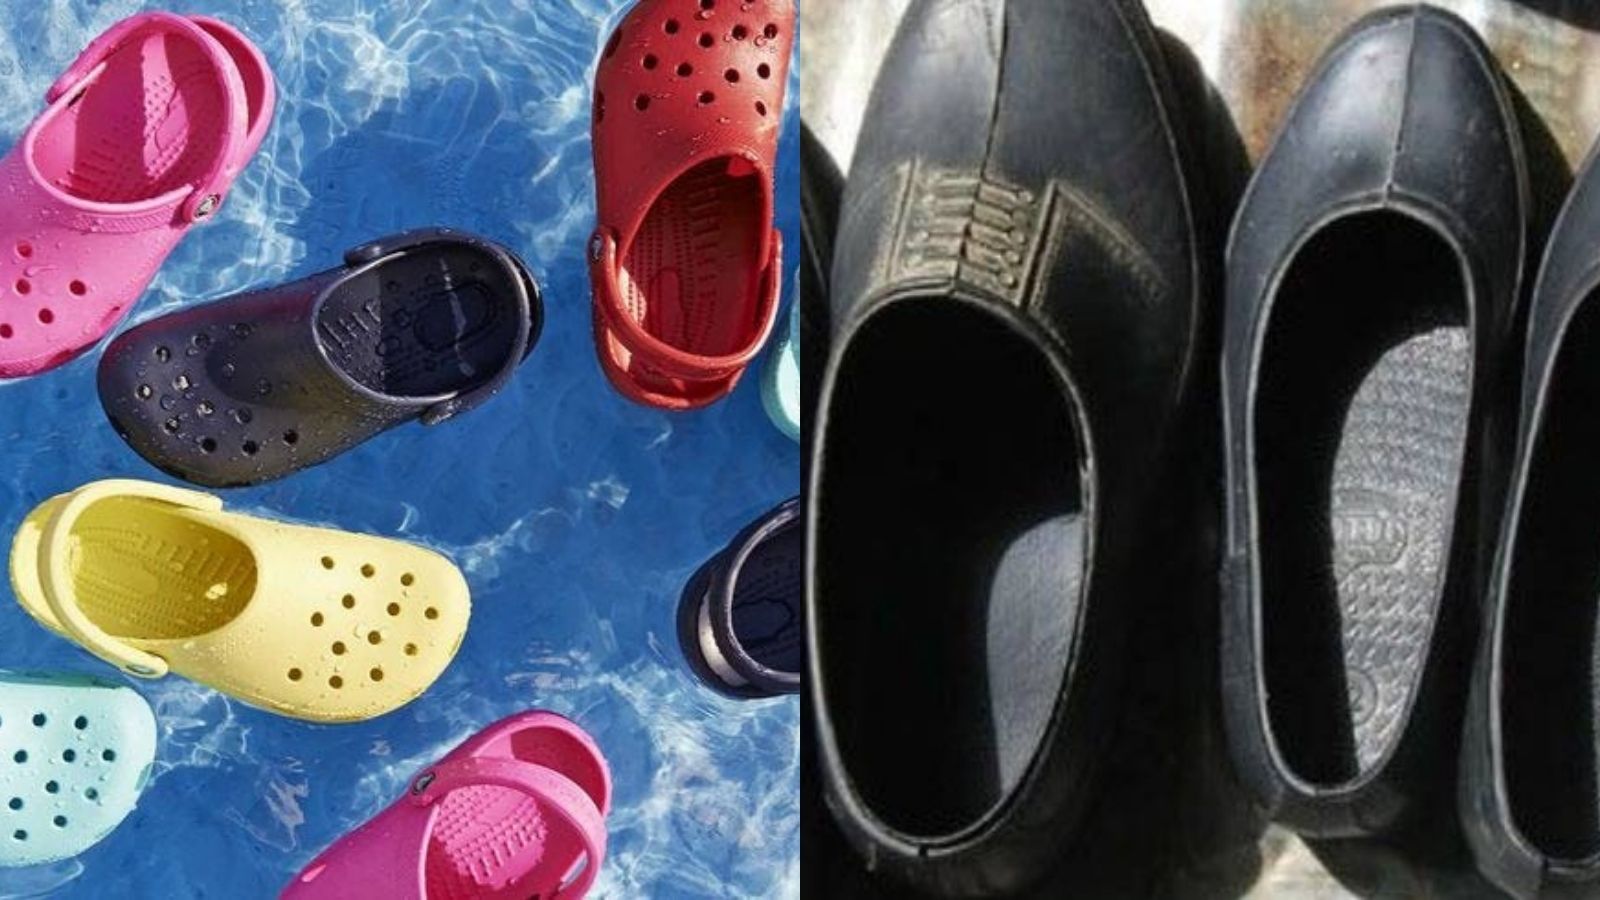 Göz kanatan ayakkabı Crocs nasıl moda oldu? Bir fikre milyarlar akıyor! Soğuk Kuyu’nun nesi eksik?